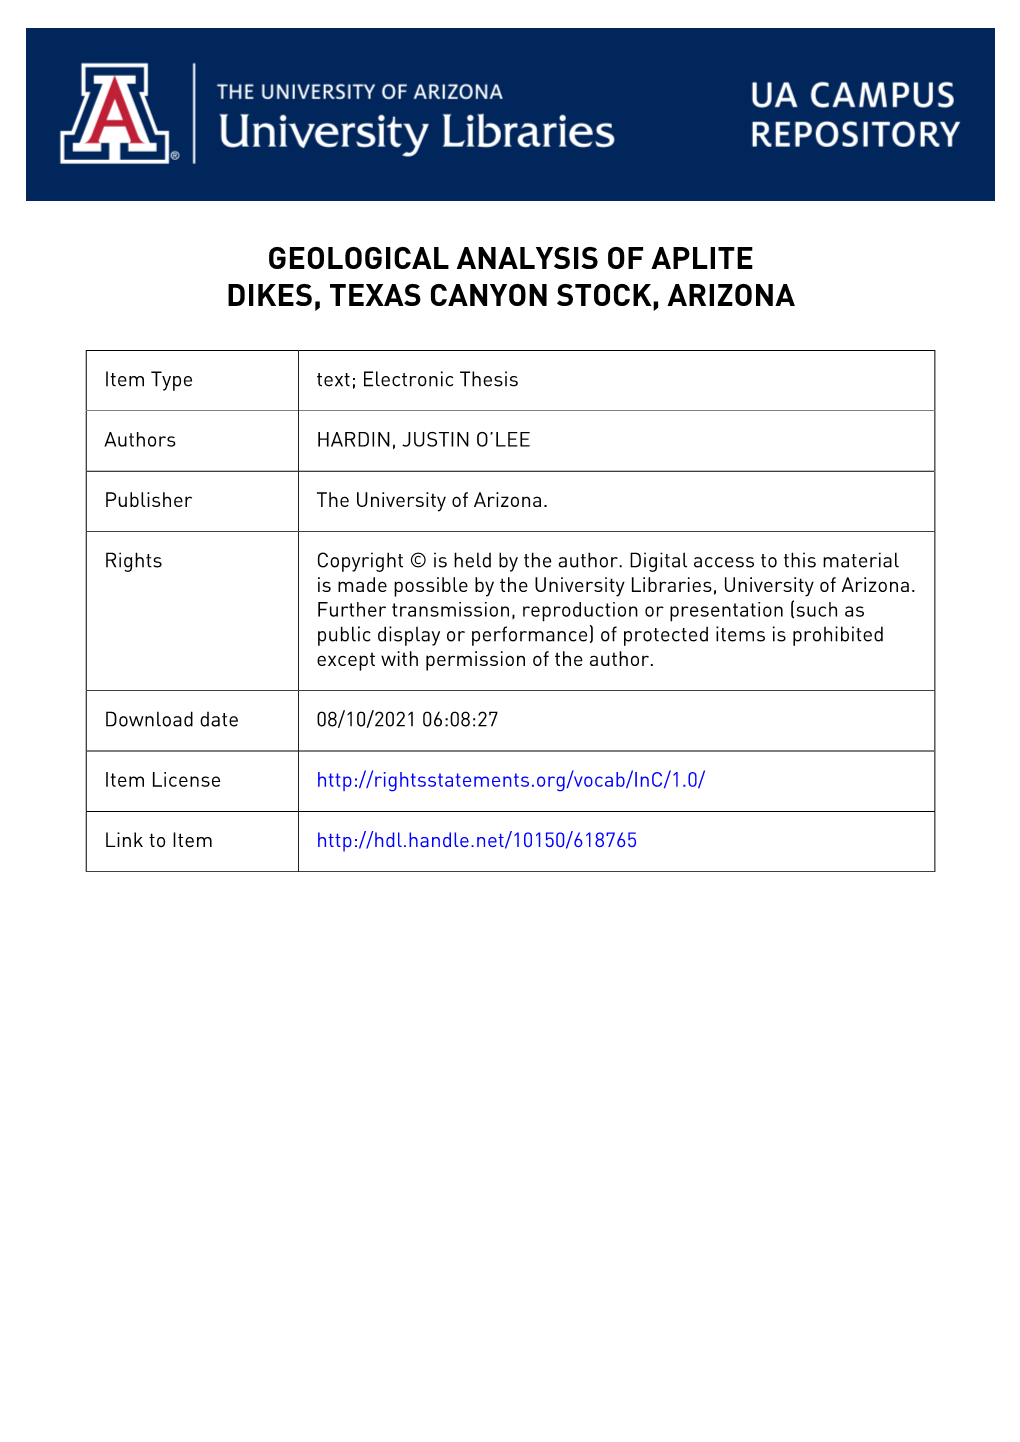 Geological Analysis of Aplite Dikes, Texas Canyon Stock, Arizona